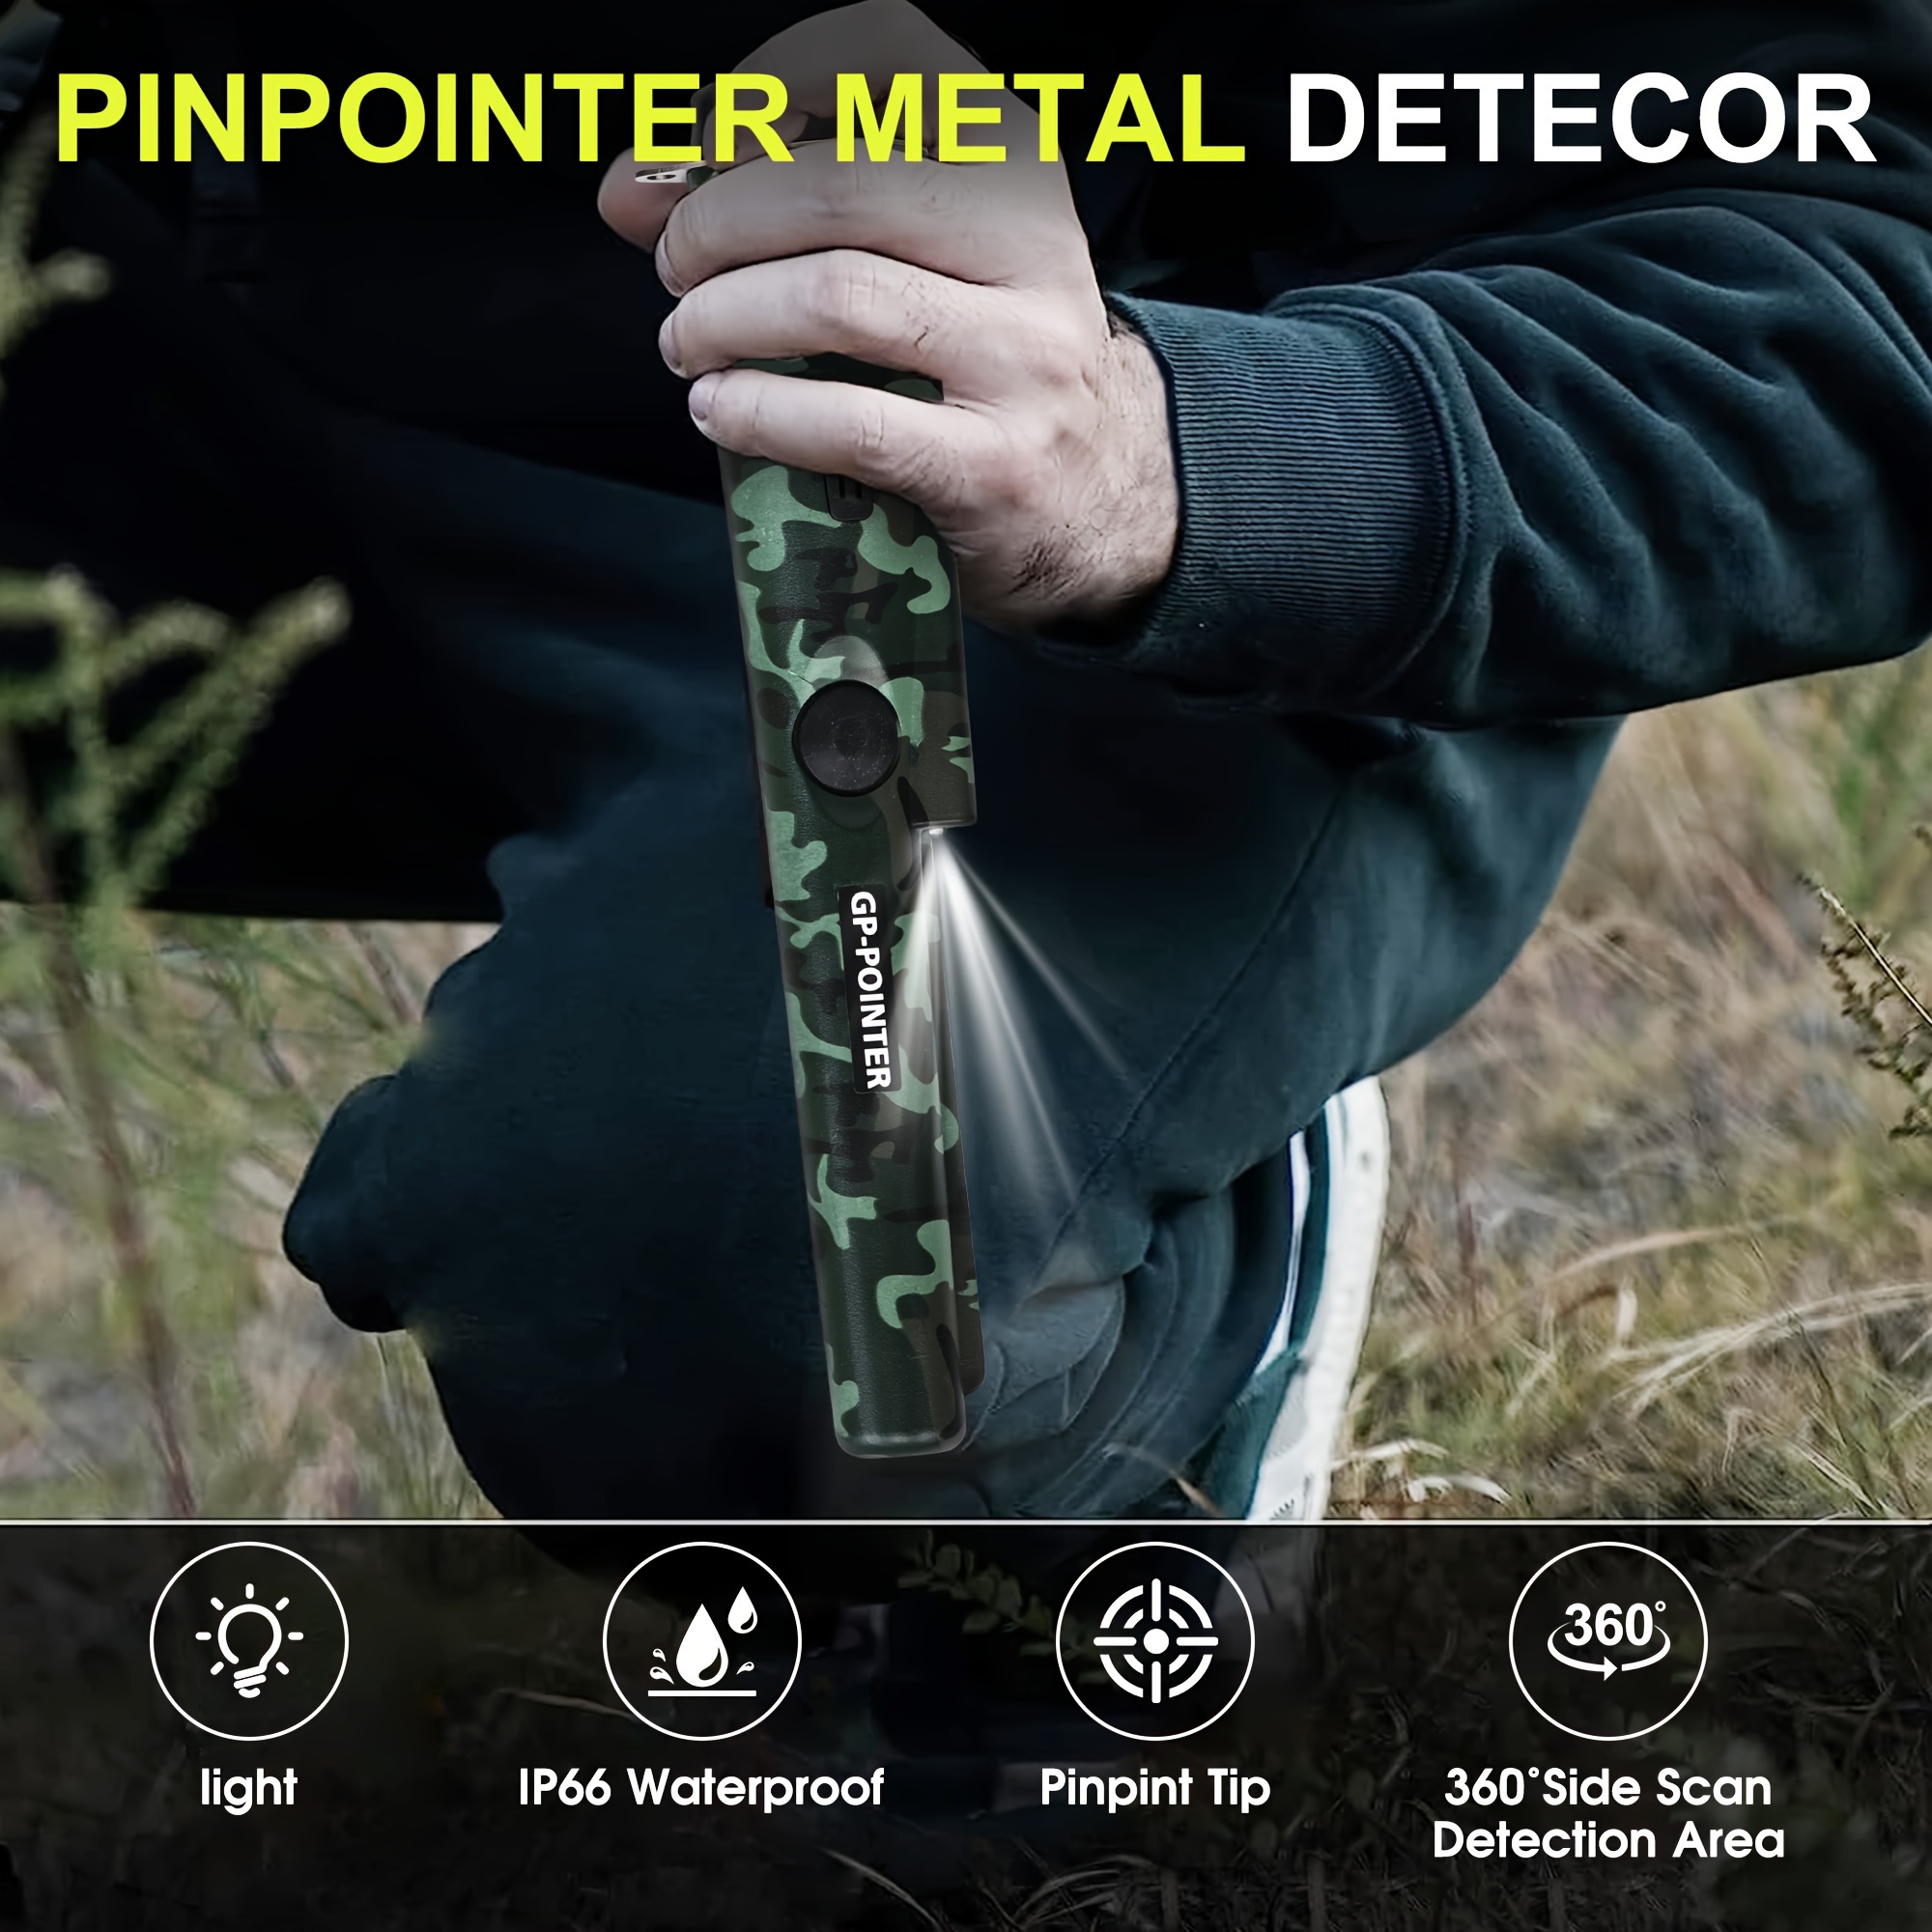 Metalldetektor Pinpointer,360° Scan Tragbar Metalldetektor IP66